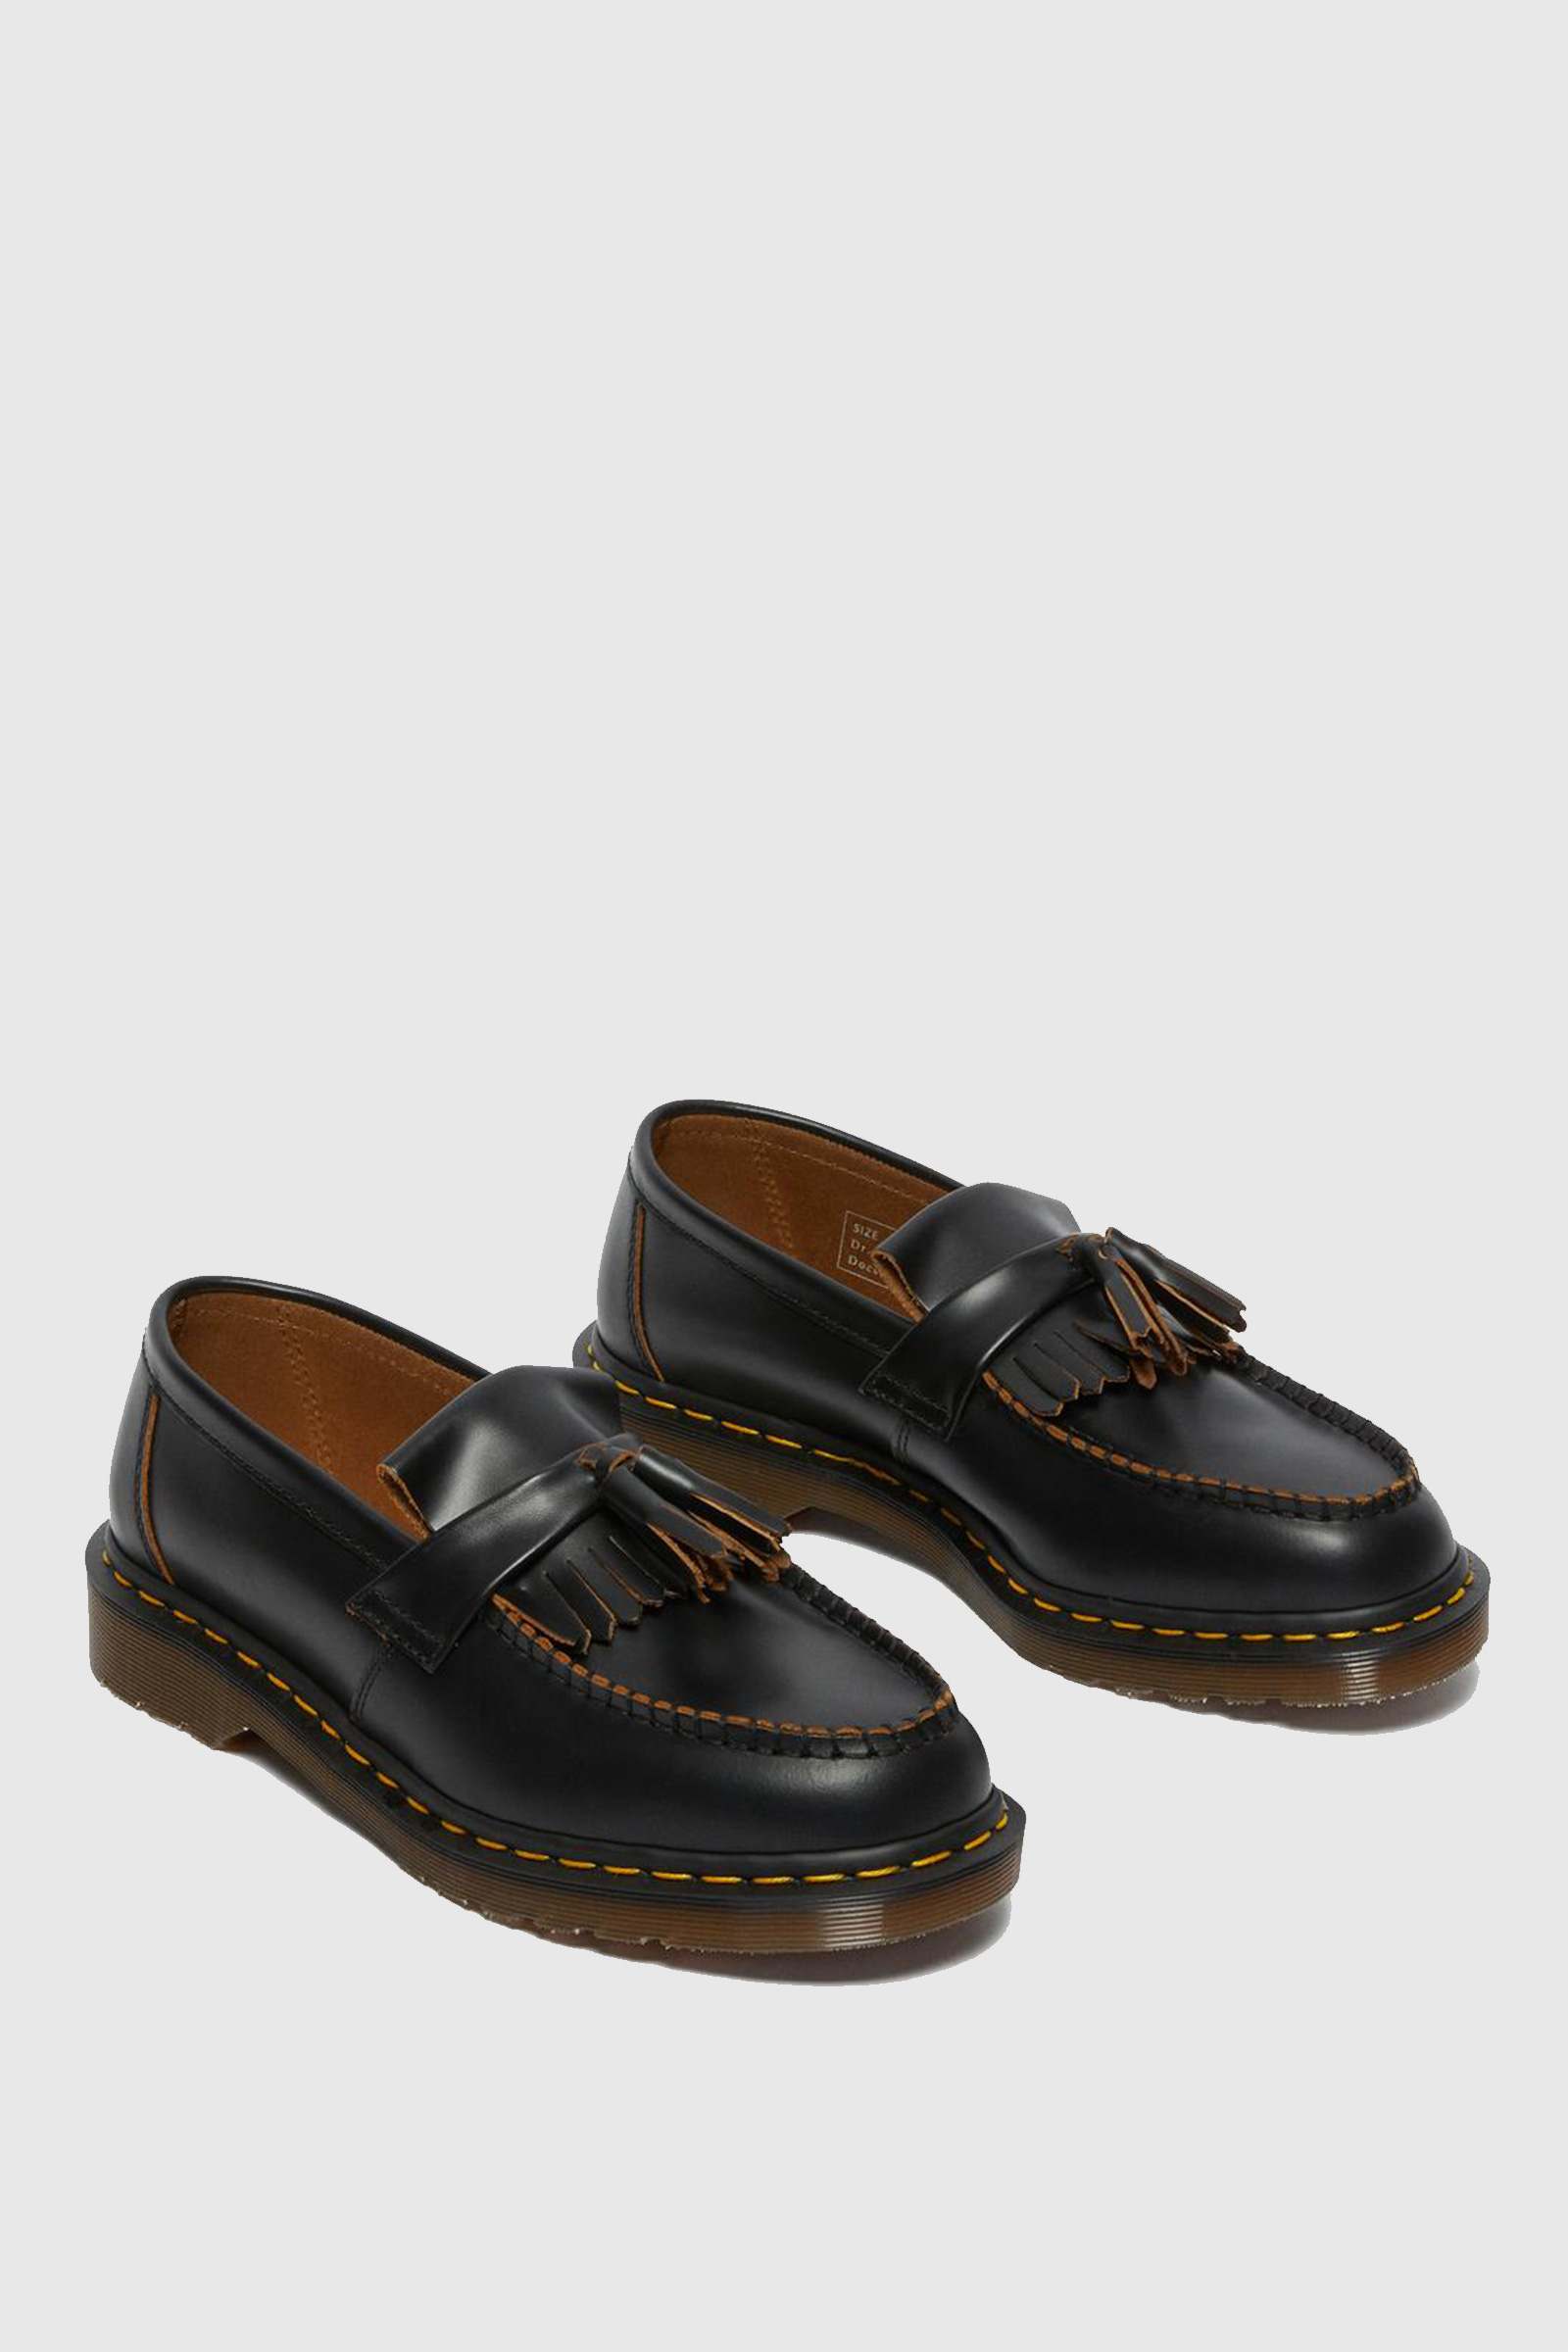 Dr. Vintage Adrian Tassel Loafers Black |